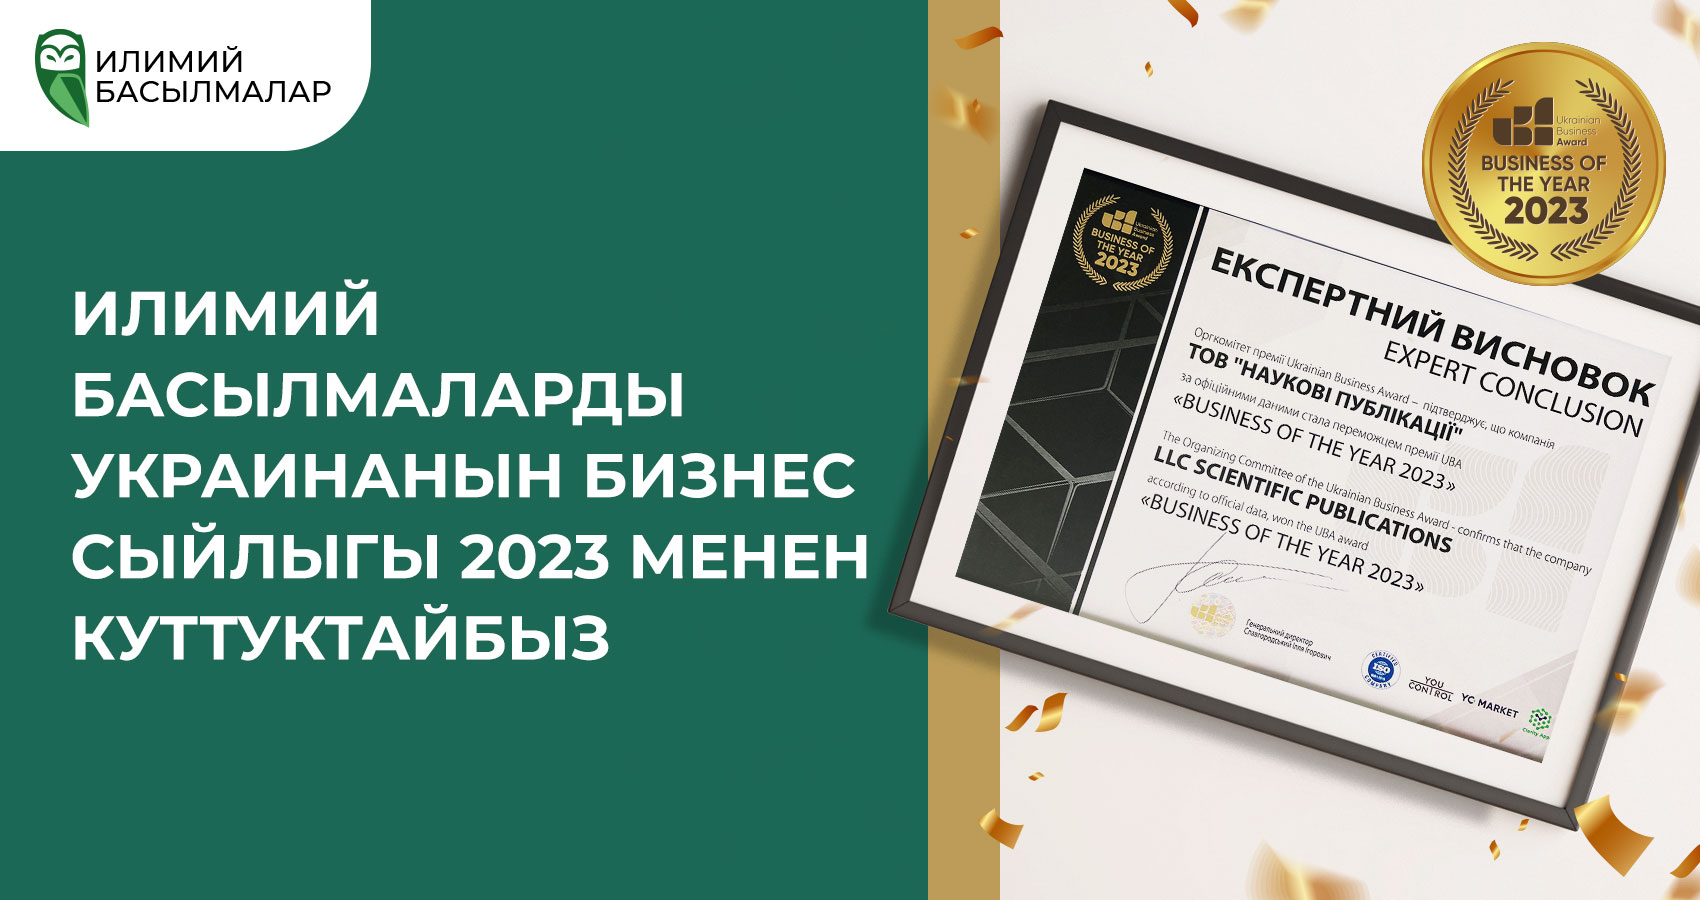 Украинанын илимий басылмаларын Украинанын бизнес сыйлыгы 2023 менен куттуктайбыз